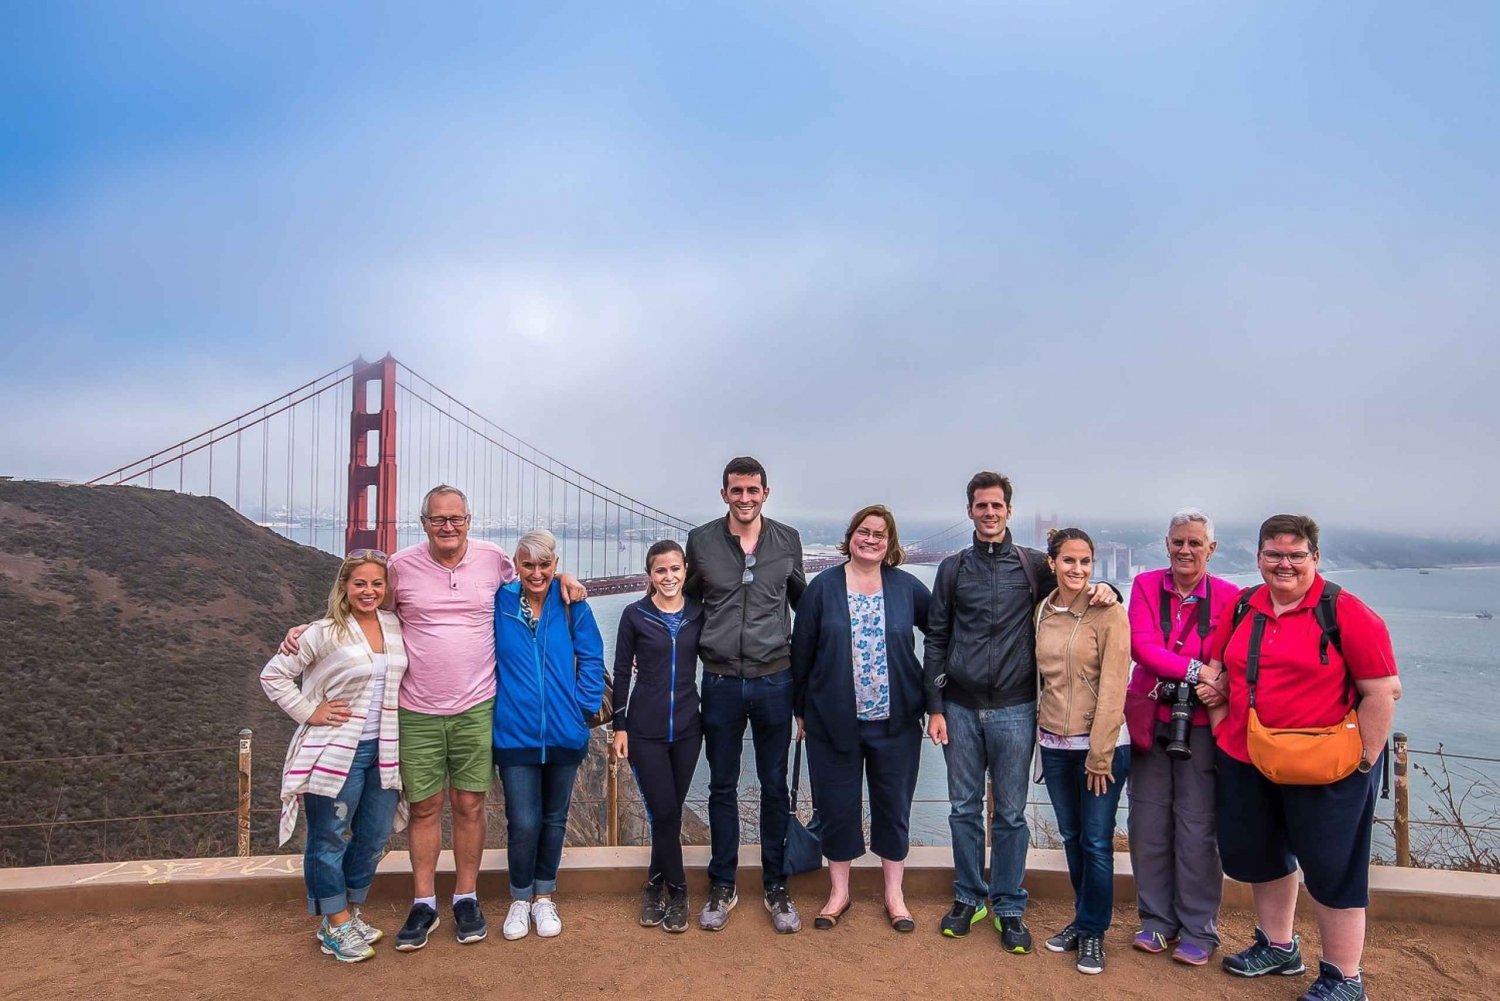 São Francisco: Excursão a Muir Woods e Sausalito com opção de Alcatraz